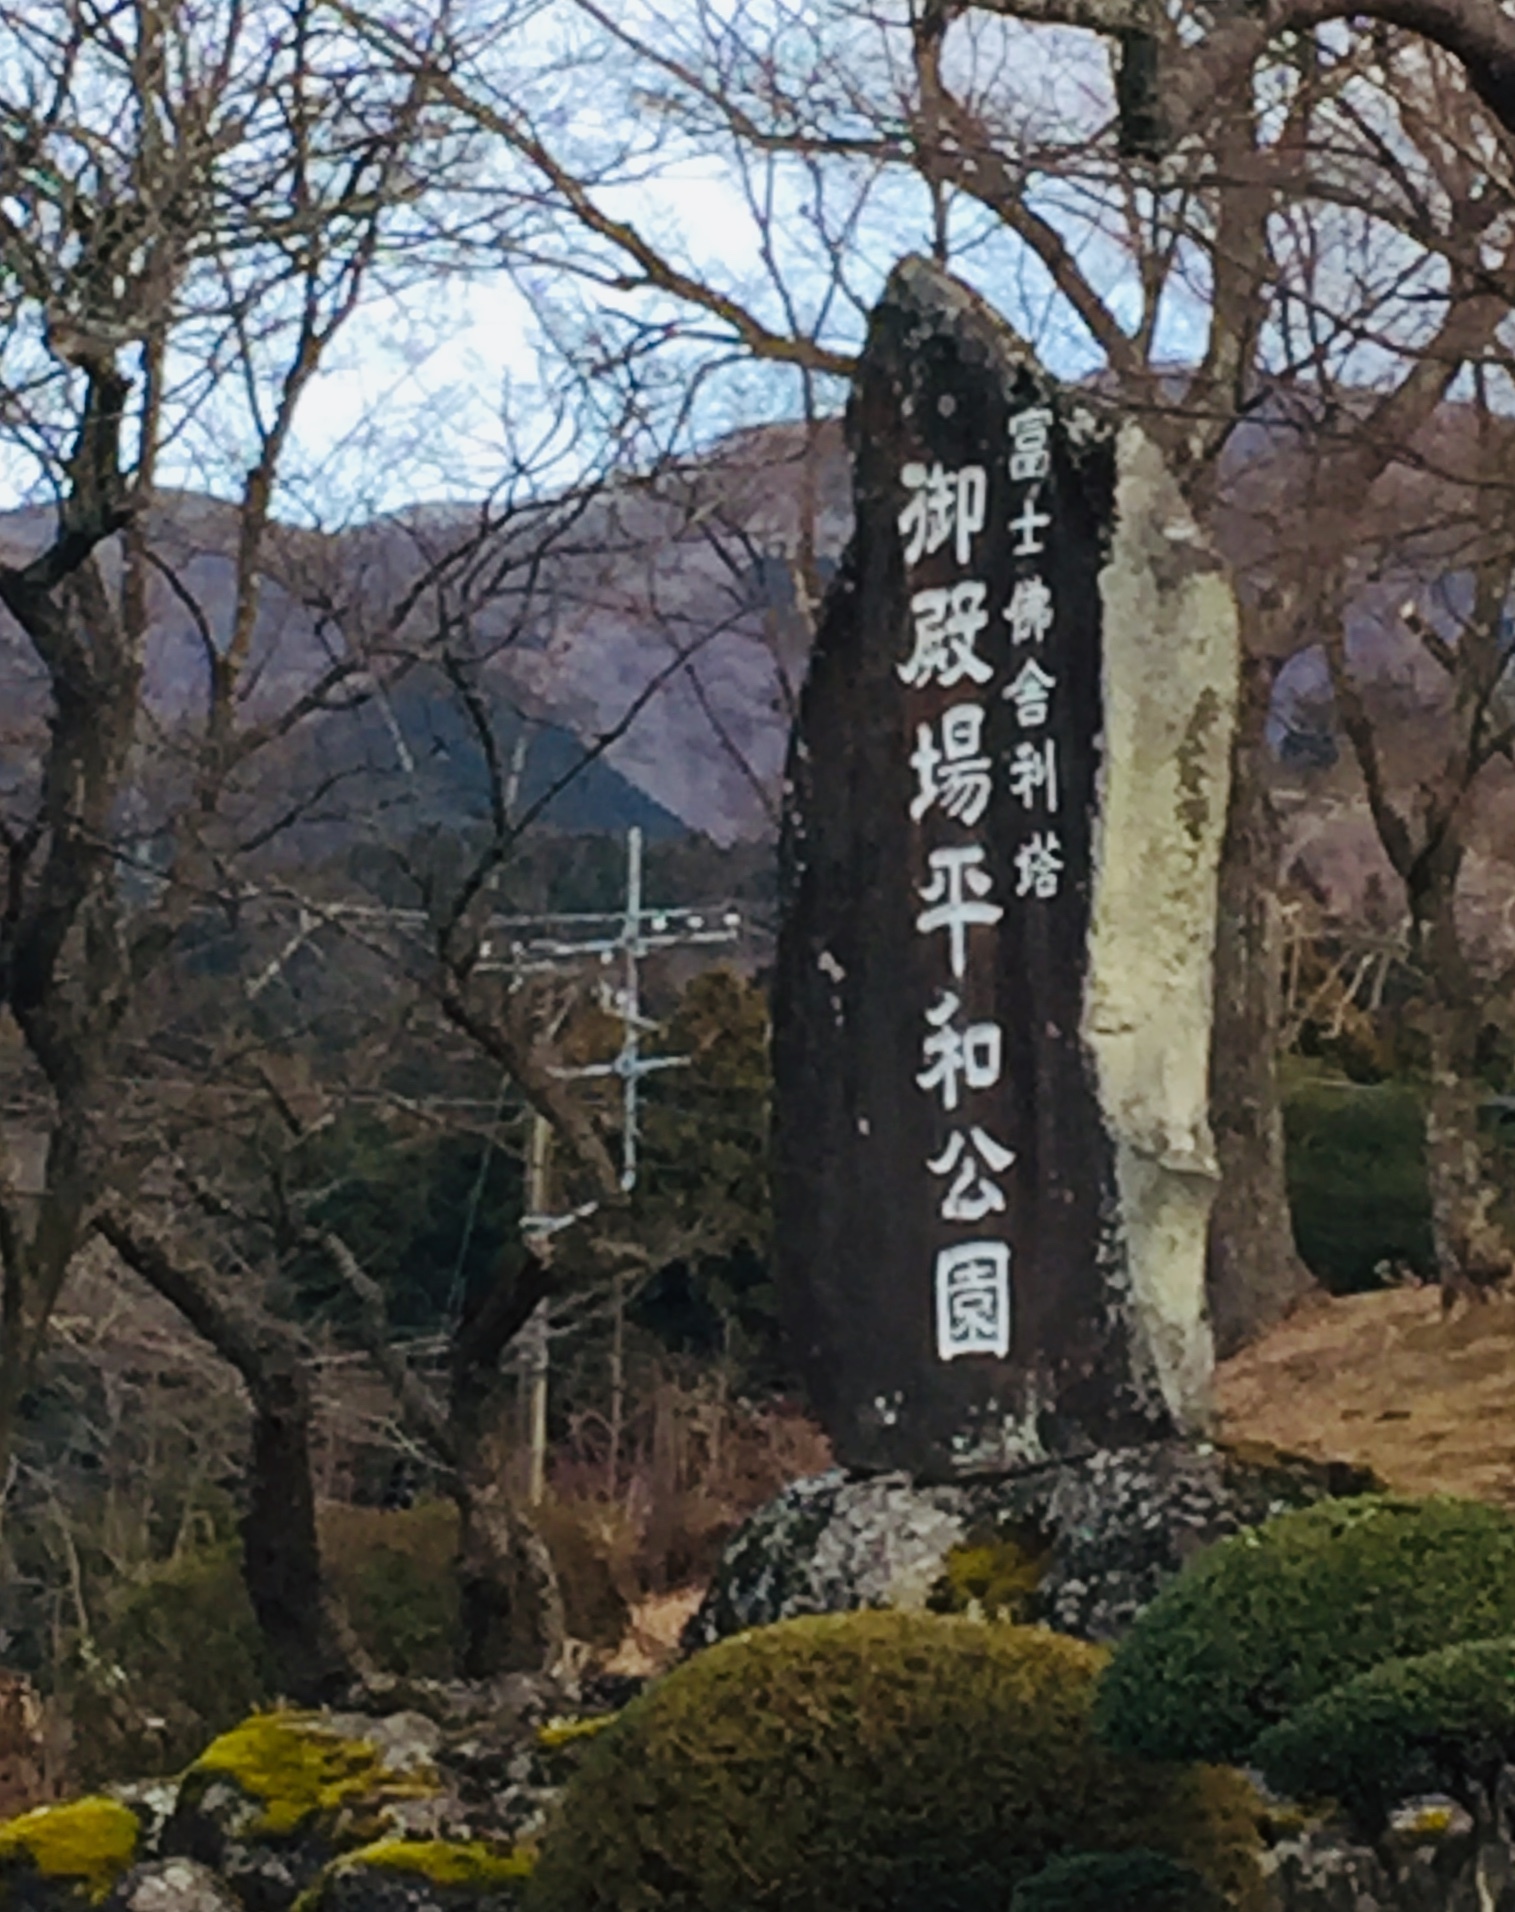 富士仏舎利塔御殿場平和公園と書かれた案内